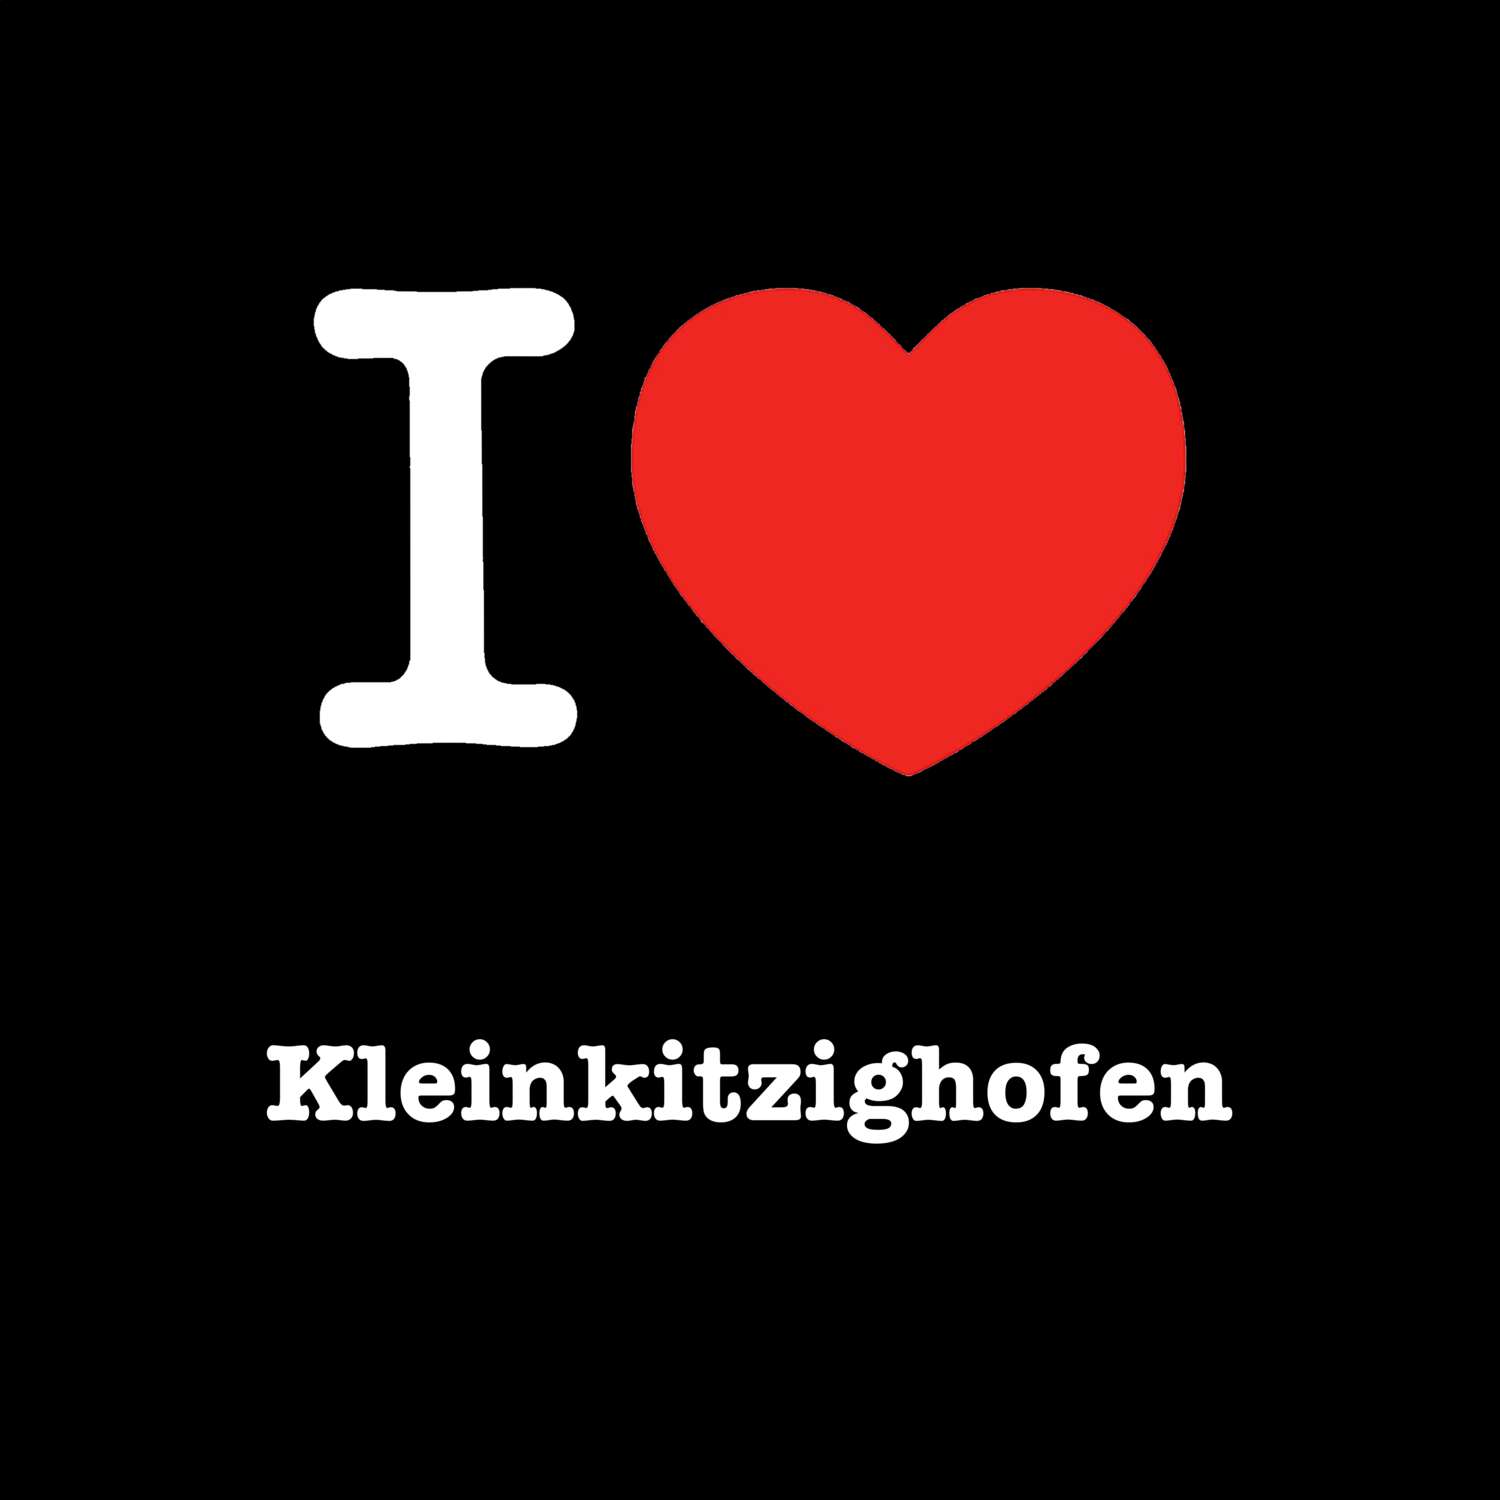 Kleinkitzighofen T-Shirt »I love«